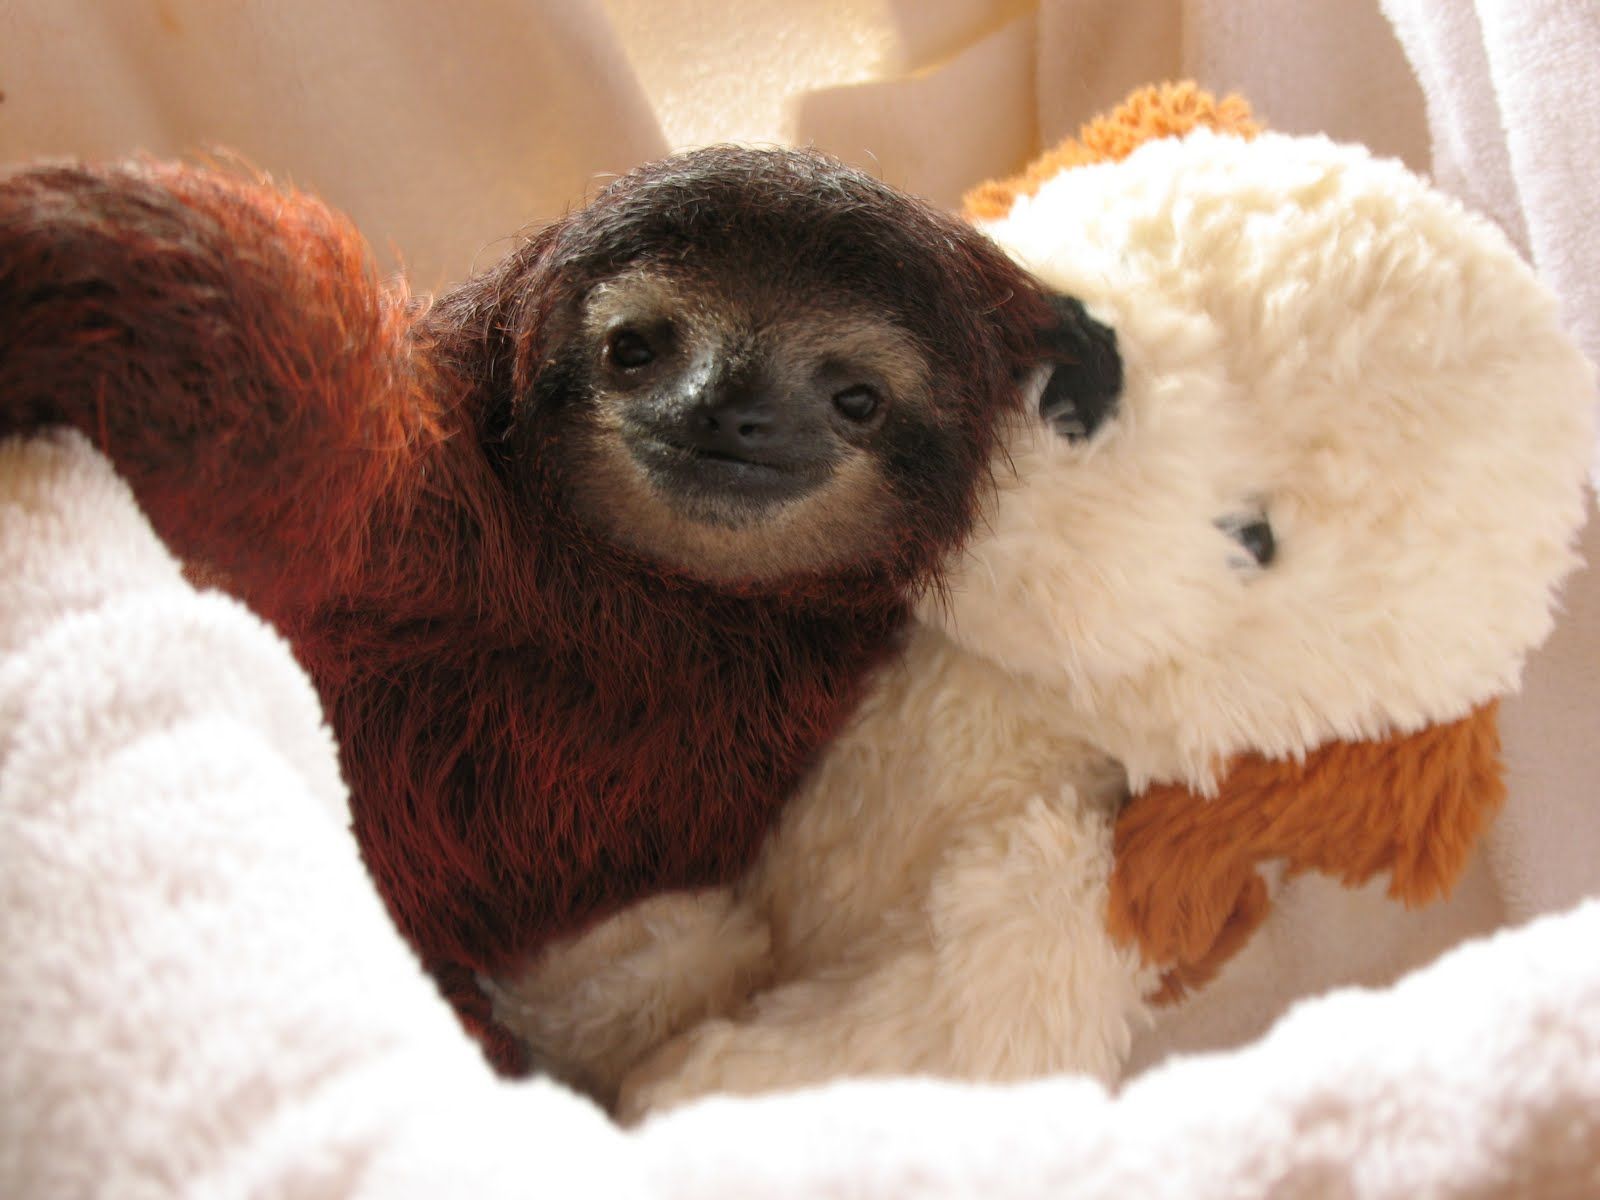 sloth cuddling teddy bear 3. Cute sloth picture, Cute baby